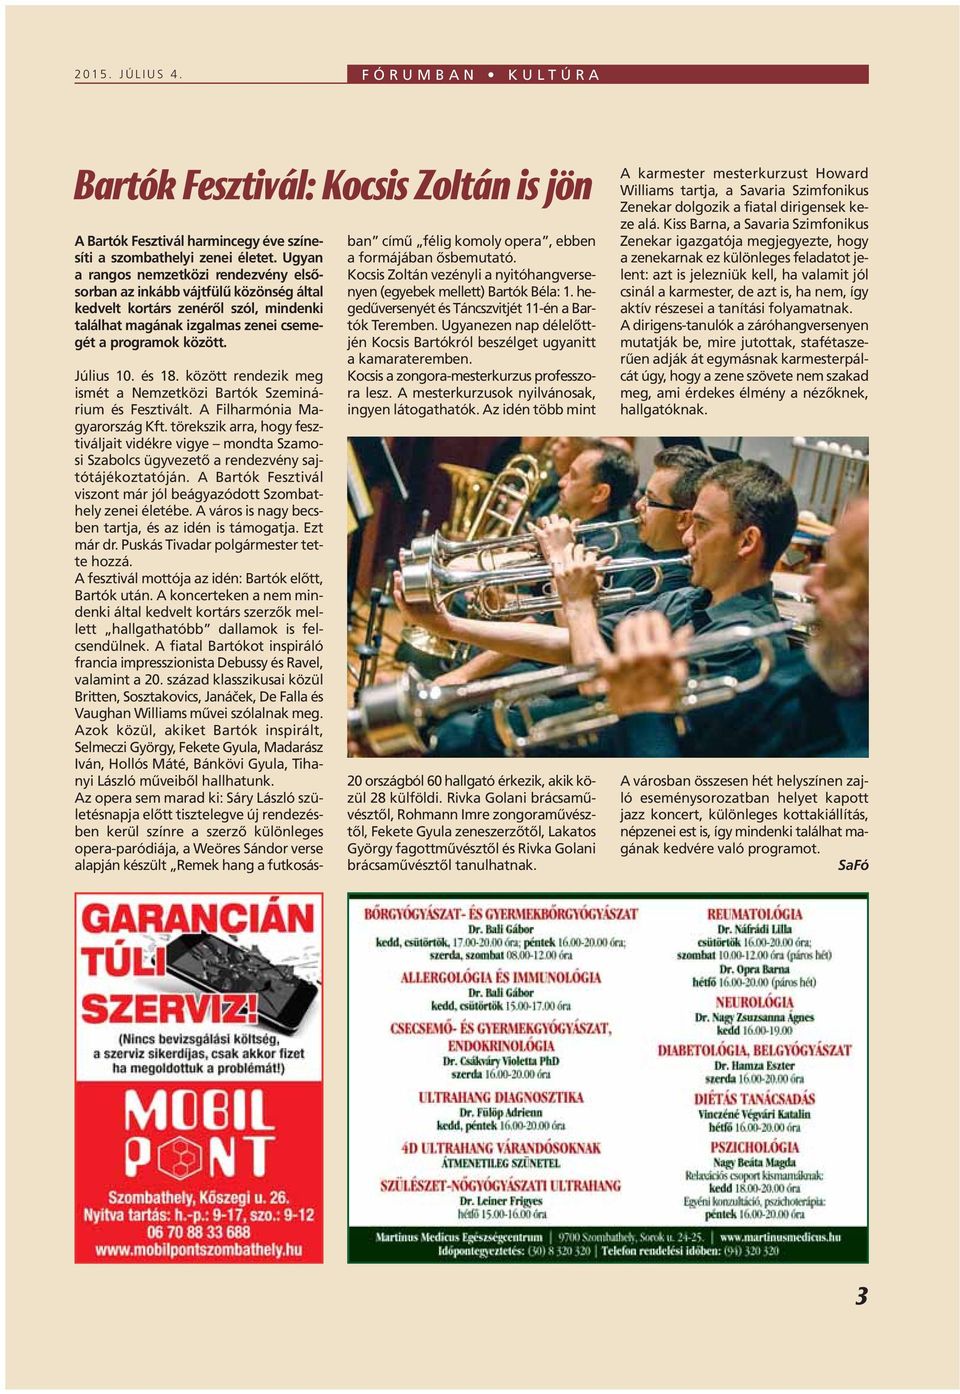 között rendezik meg ismét a Nemzetközi Bartók Szeminárium és Fesztivált. A Filharmónia Magyarország Kft.